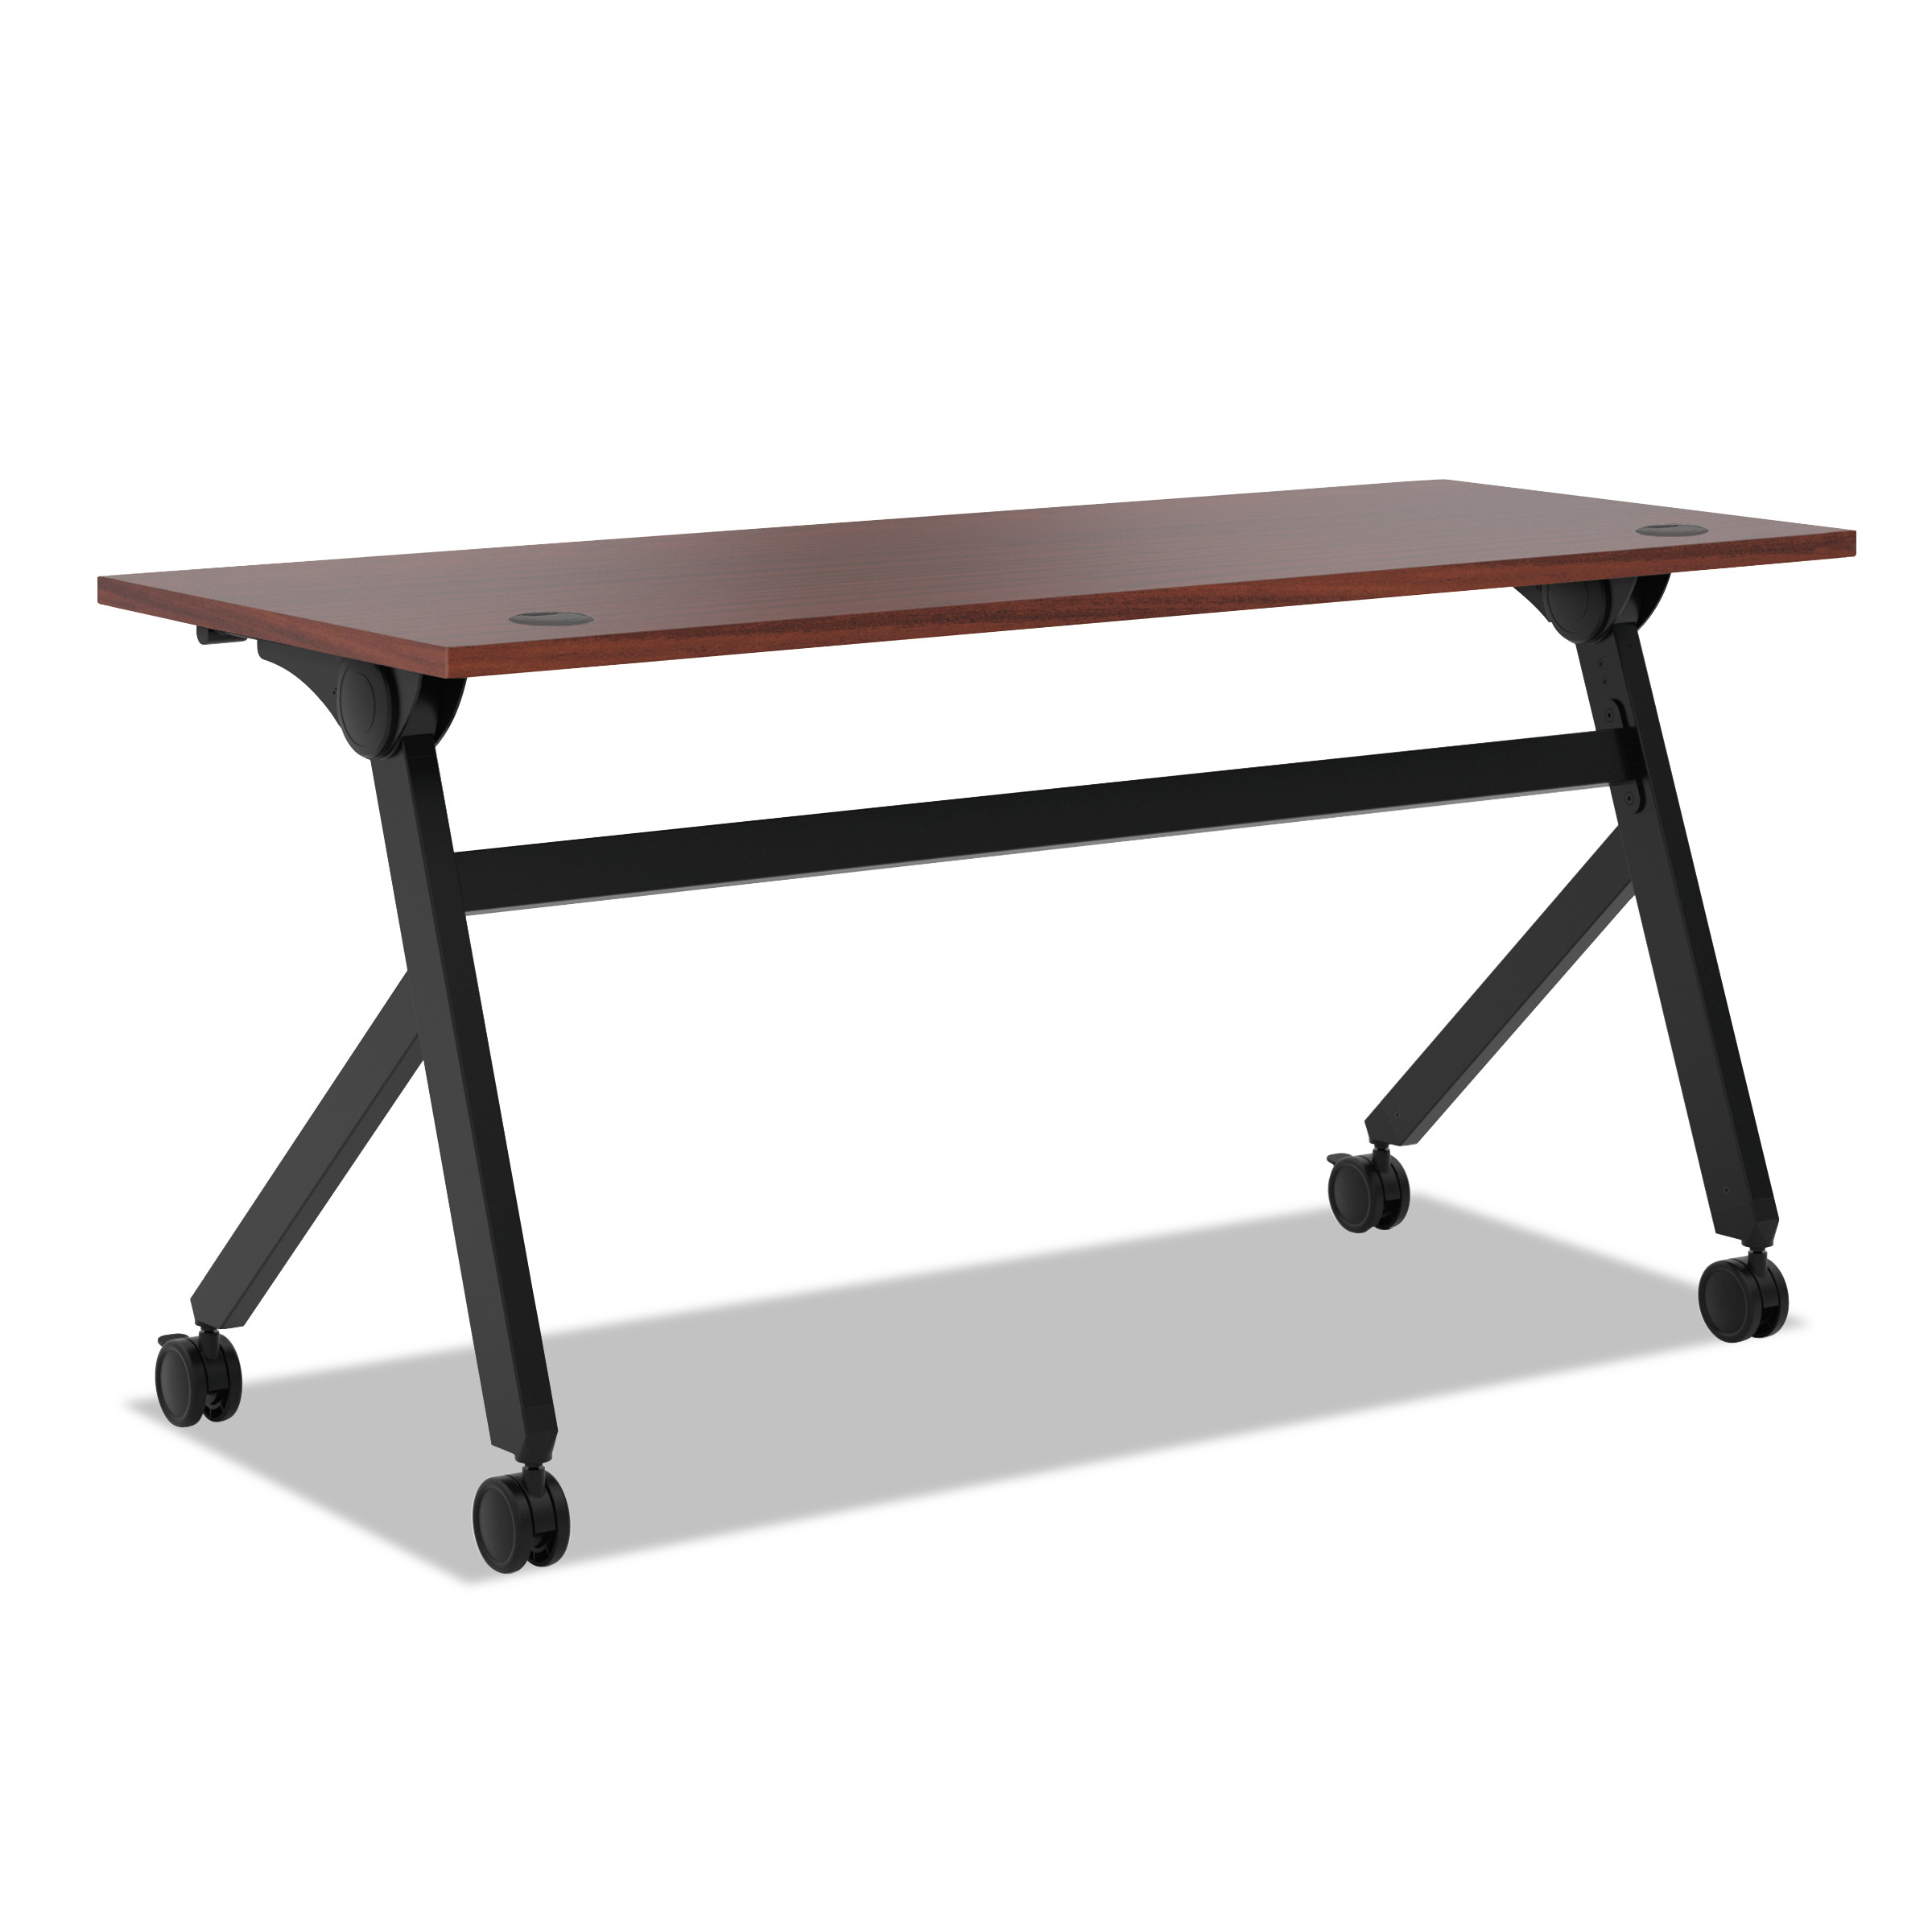  HON HBMPT6024P.C1 Multipurpose Table Flip Base Table, 60w x 24d x 29 3/8h, Chestnut (BSXBMPT6024PC) 